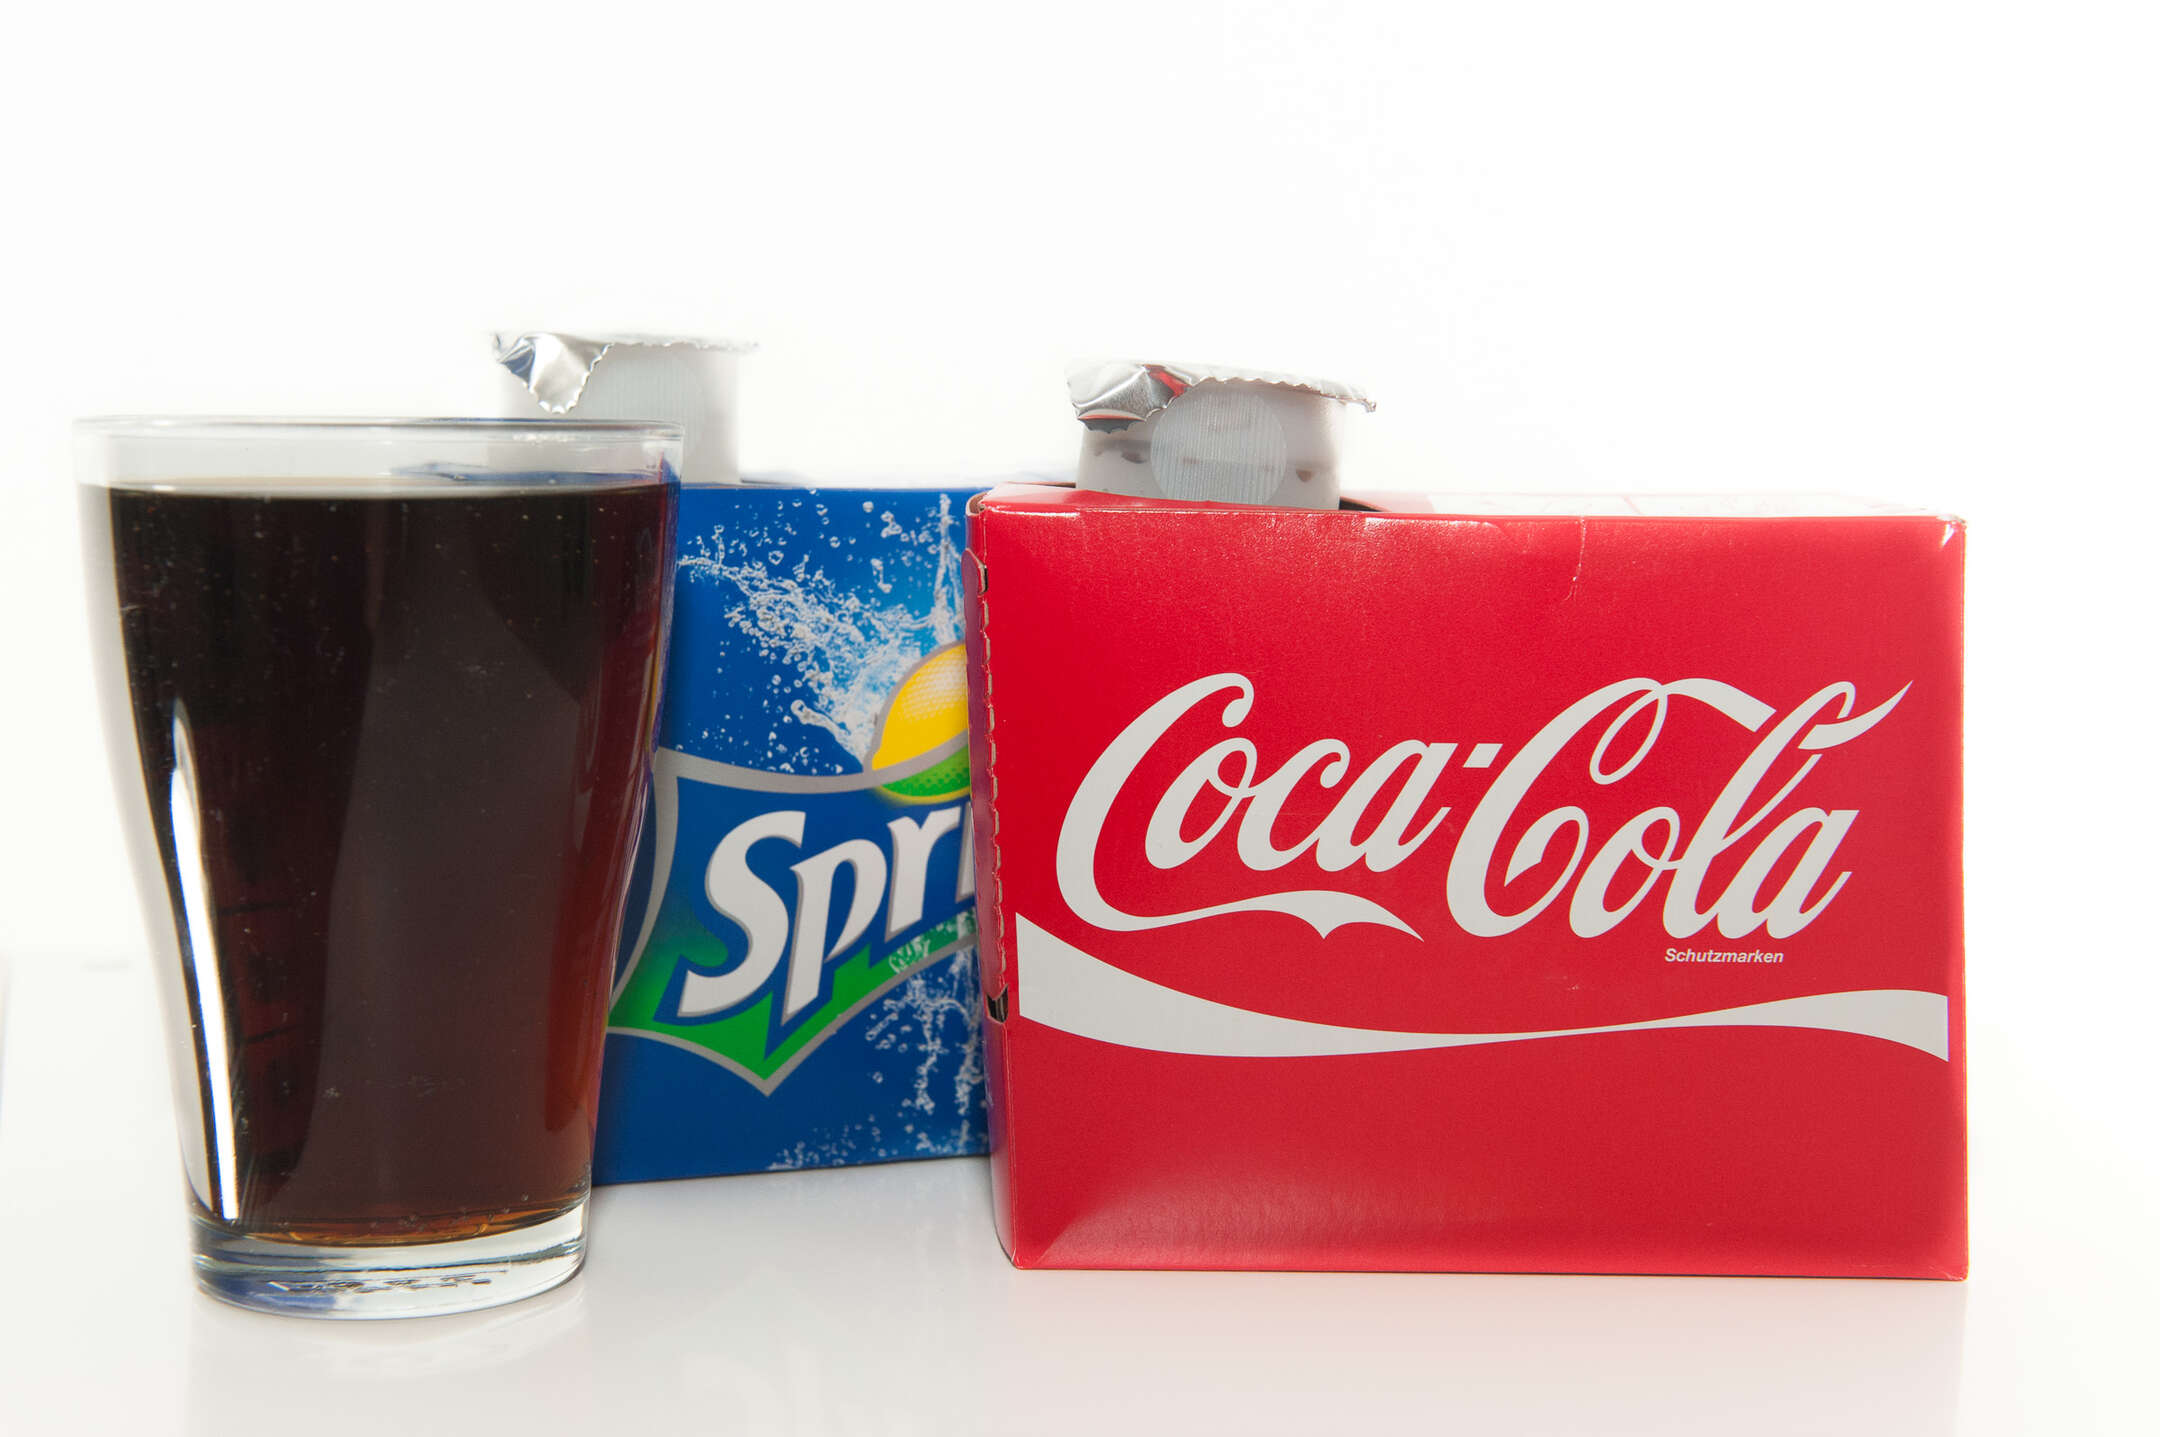 Echten Coca Cola Sirup kaufen oder selber machen?